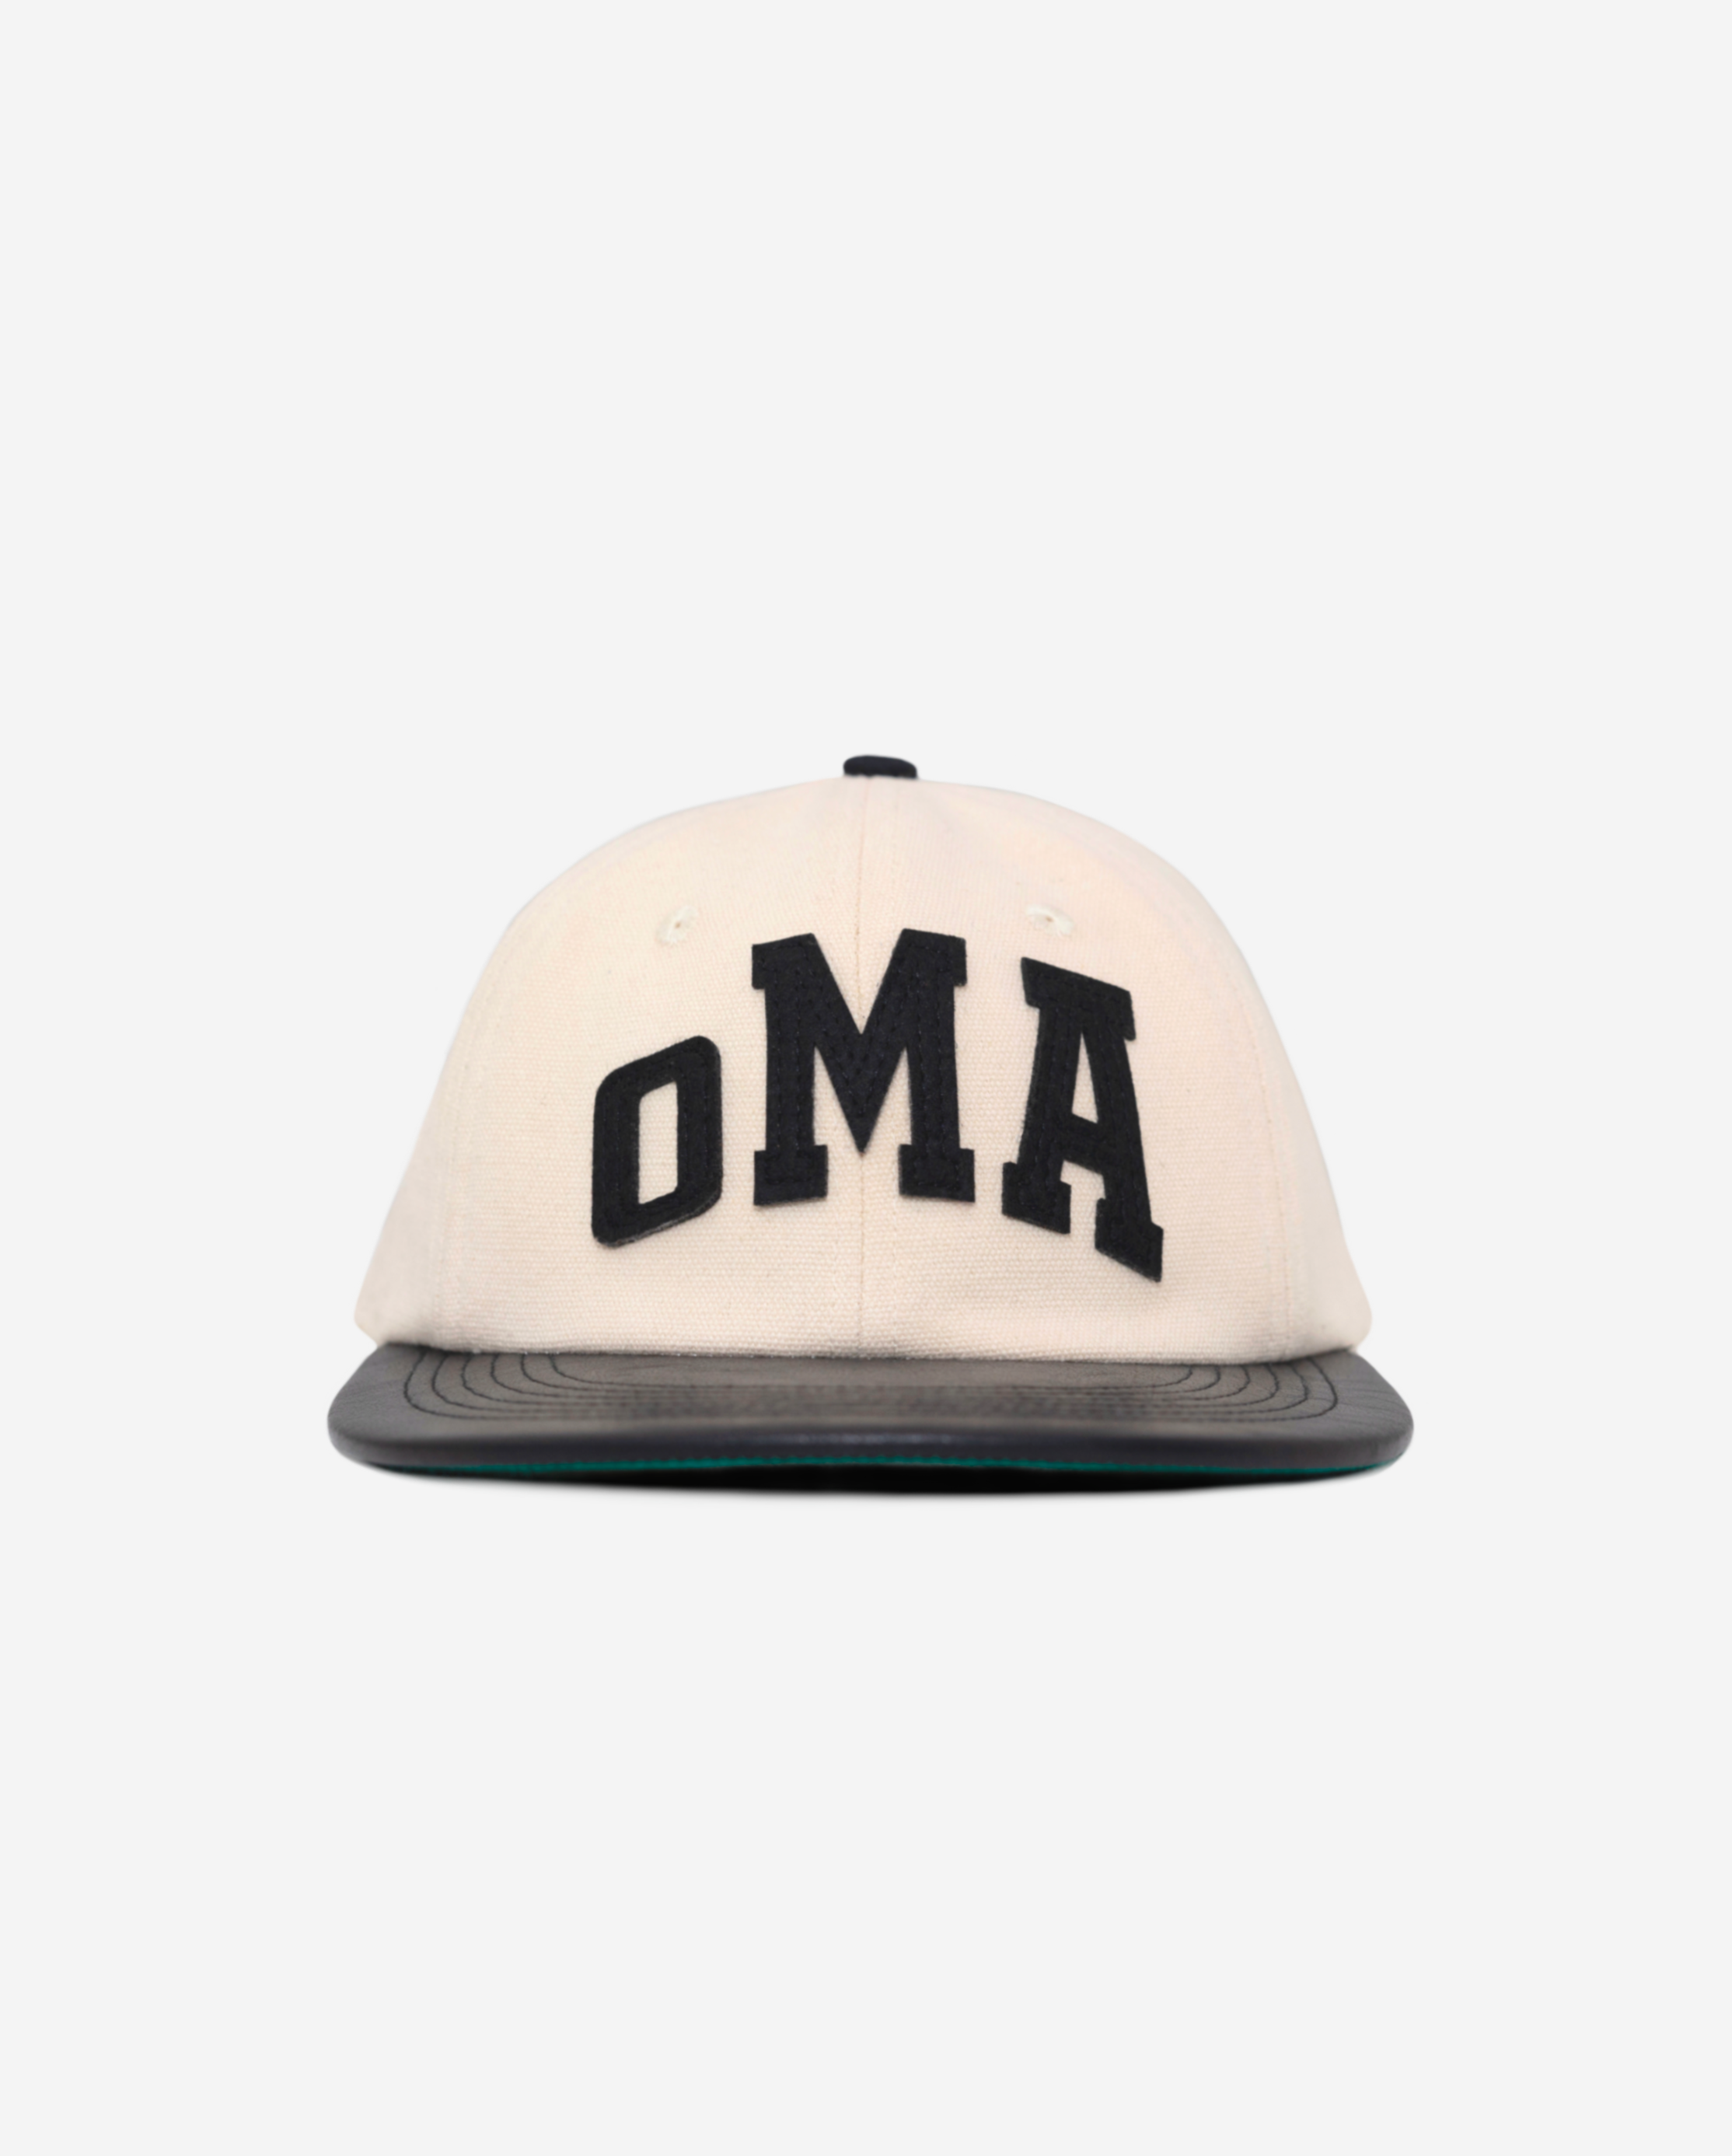 oMA ARCH SKULL CAP (GUM) ピンク 海外限定アパレル - 帽子